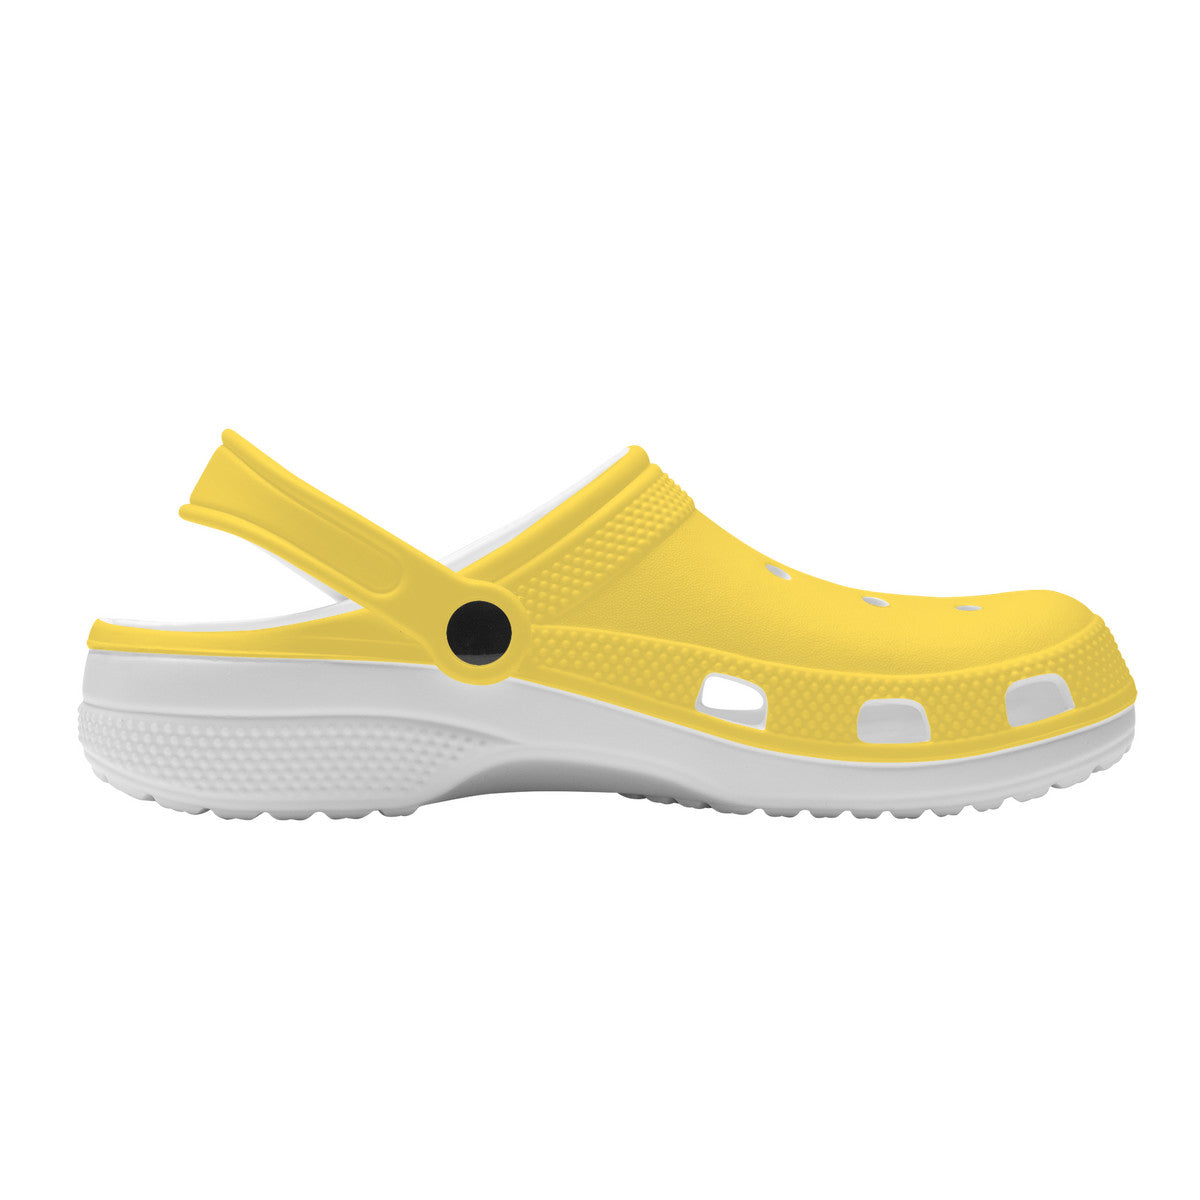 Urban Island Gear Sunshine Crocs